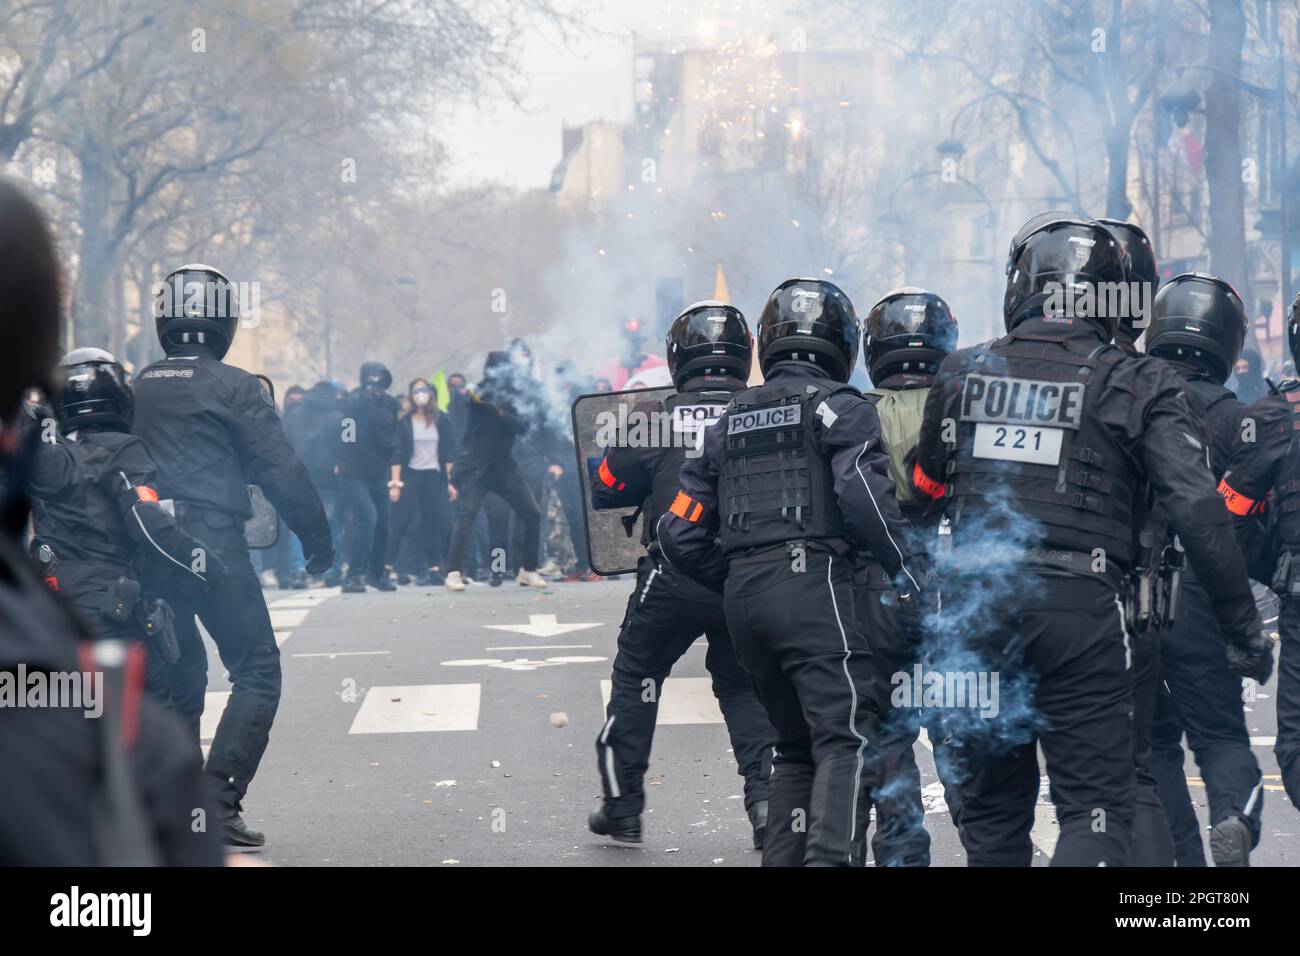 La polizia antisommossa francese ( Brav ) si trova a fronteggiare i disonori nel fumo di gas lacrimogeni alla fine di una protesta contro la riforma pensionistica in una strada di Parigi, Francia Foto Stock